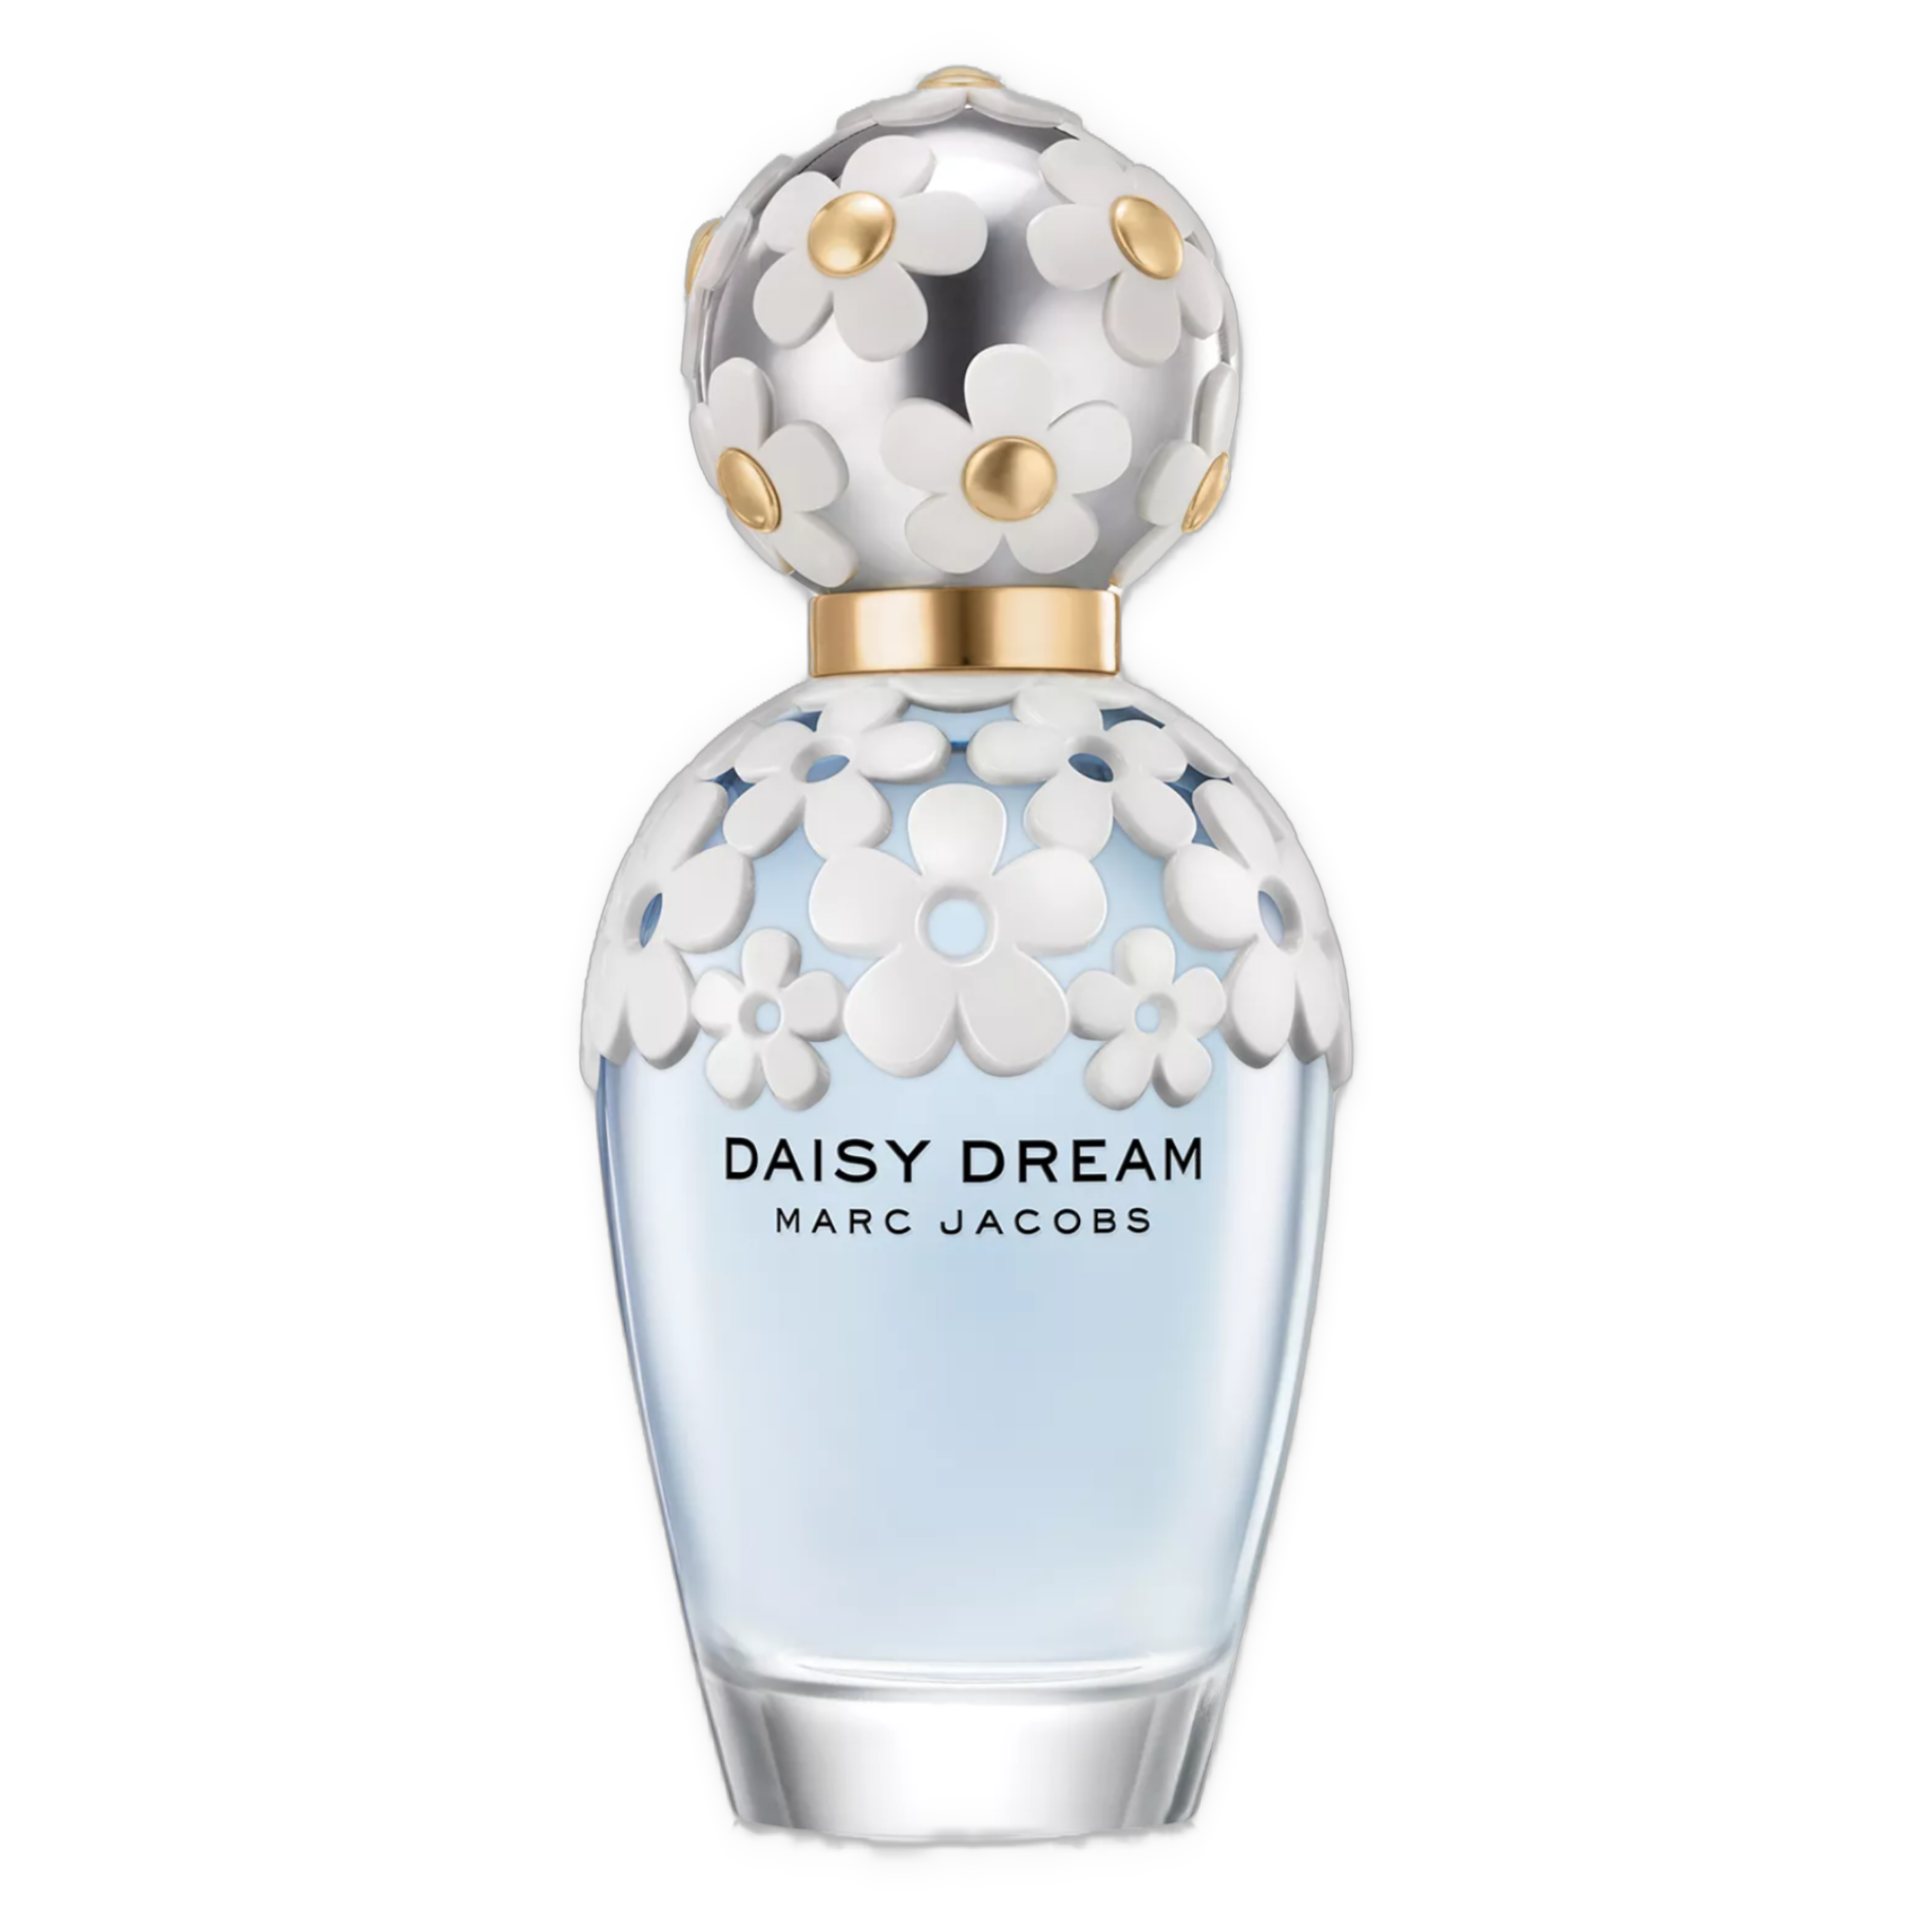 Daisy Dream - Eau de Toilette